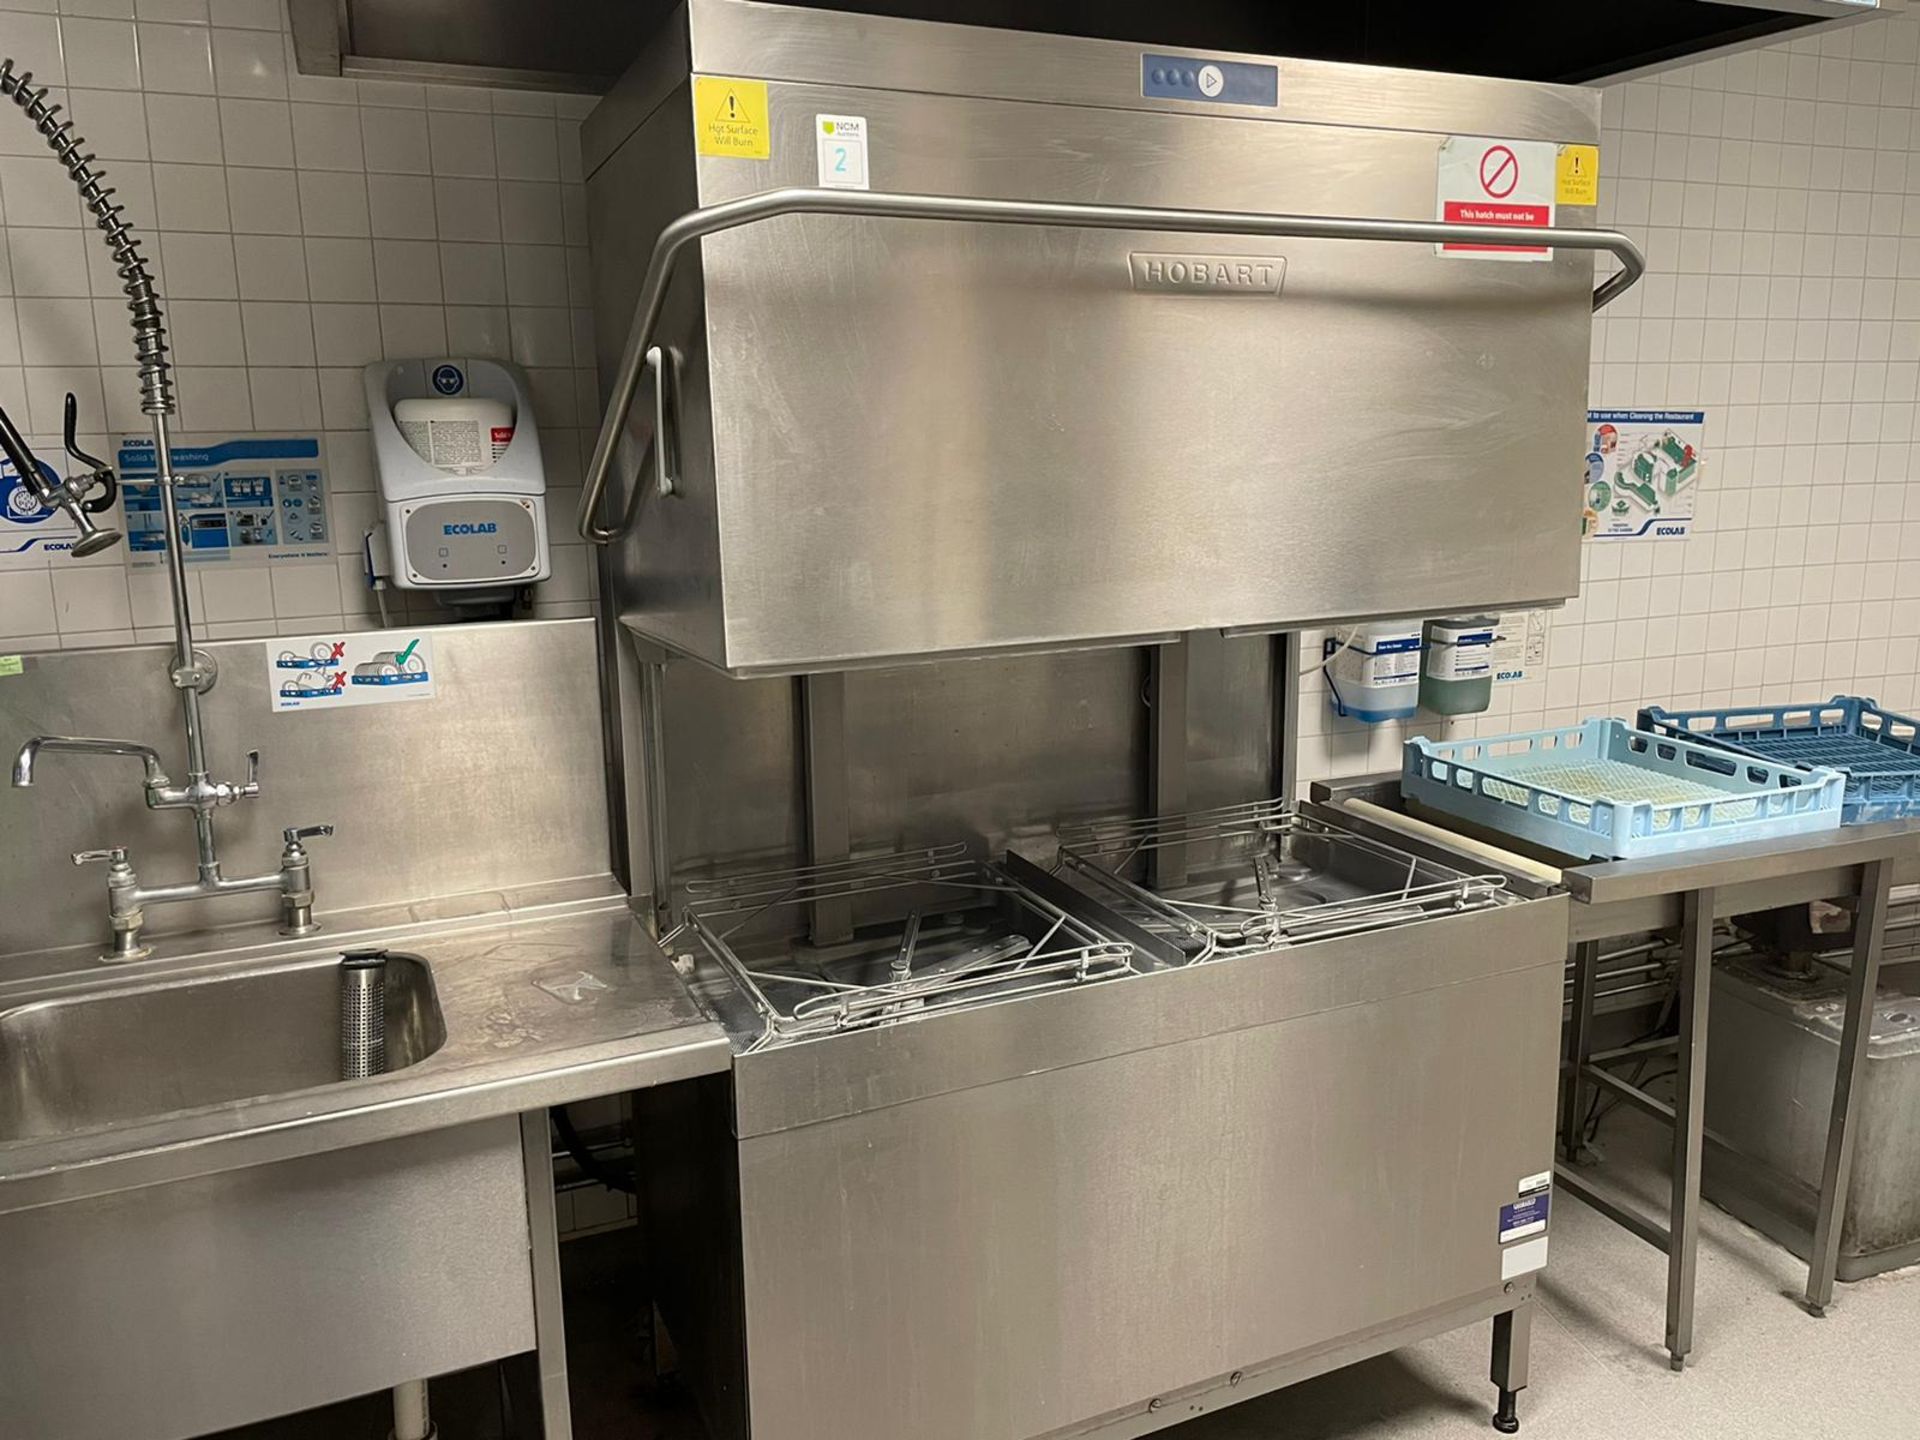 Hobart Dishwasher - Image 3 of 11